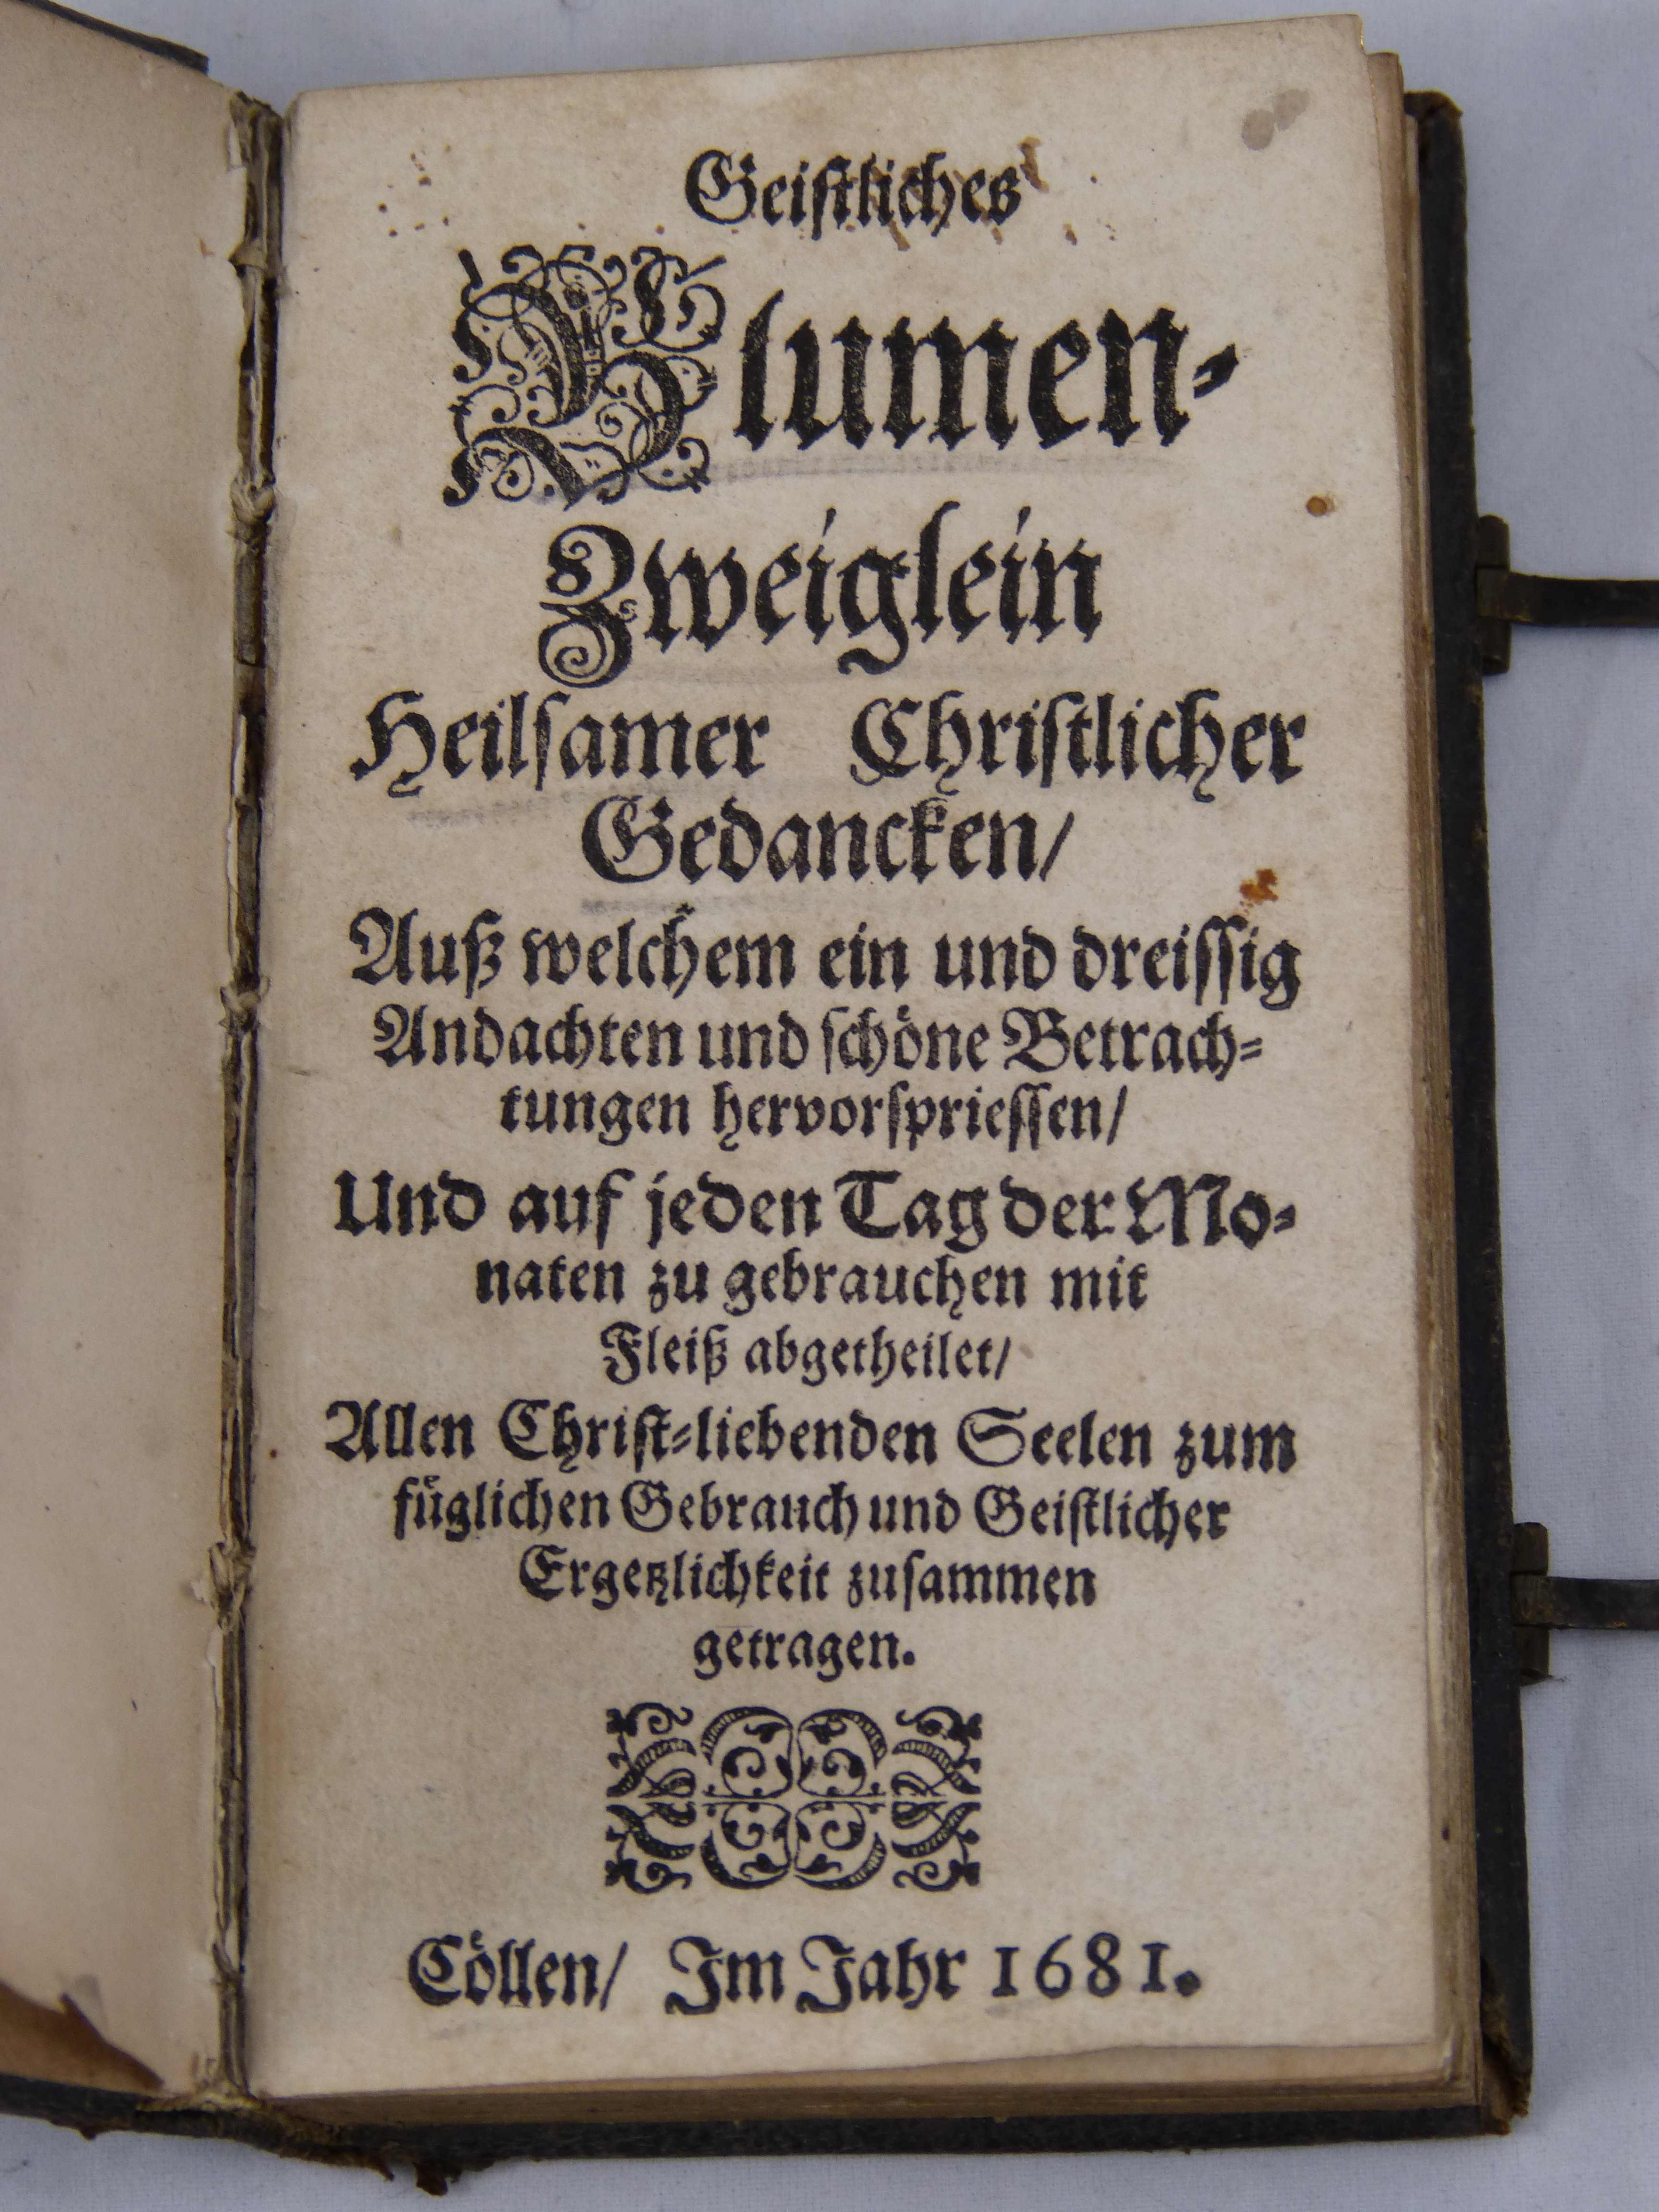 Buch ""Geistliches Blumenzweiglein heilsamer christlicher Gedanken", 1681 (Städt. Hellweg-Museum Geseke CC BY-NC-SA)